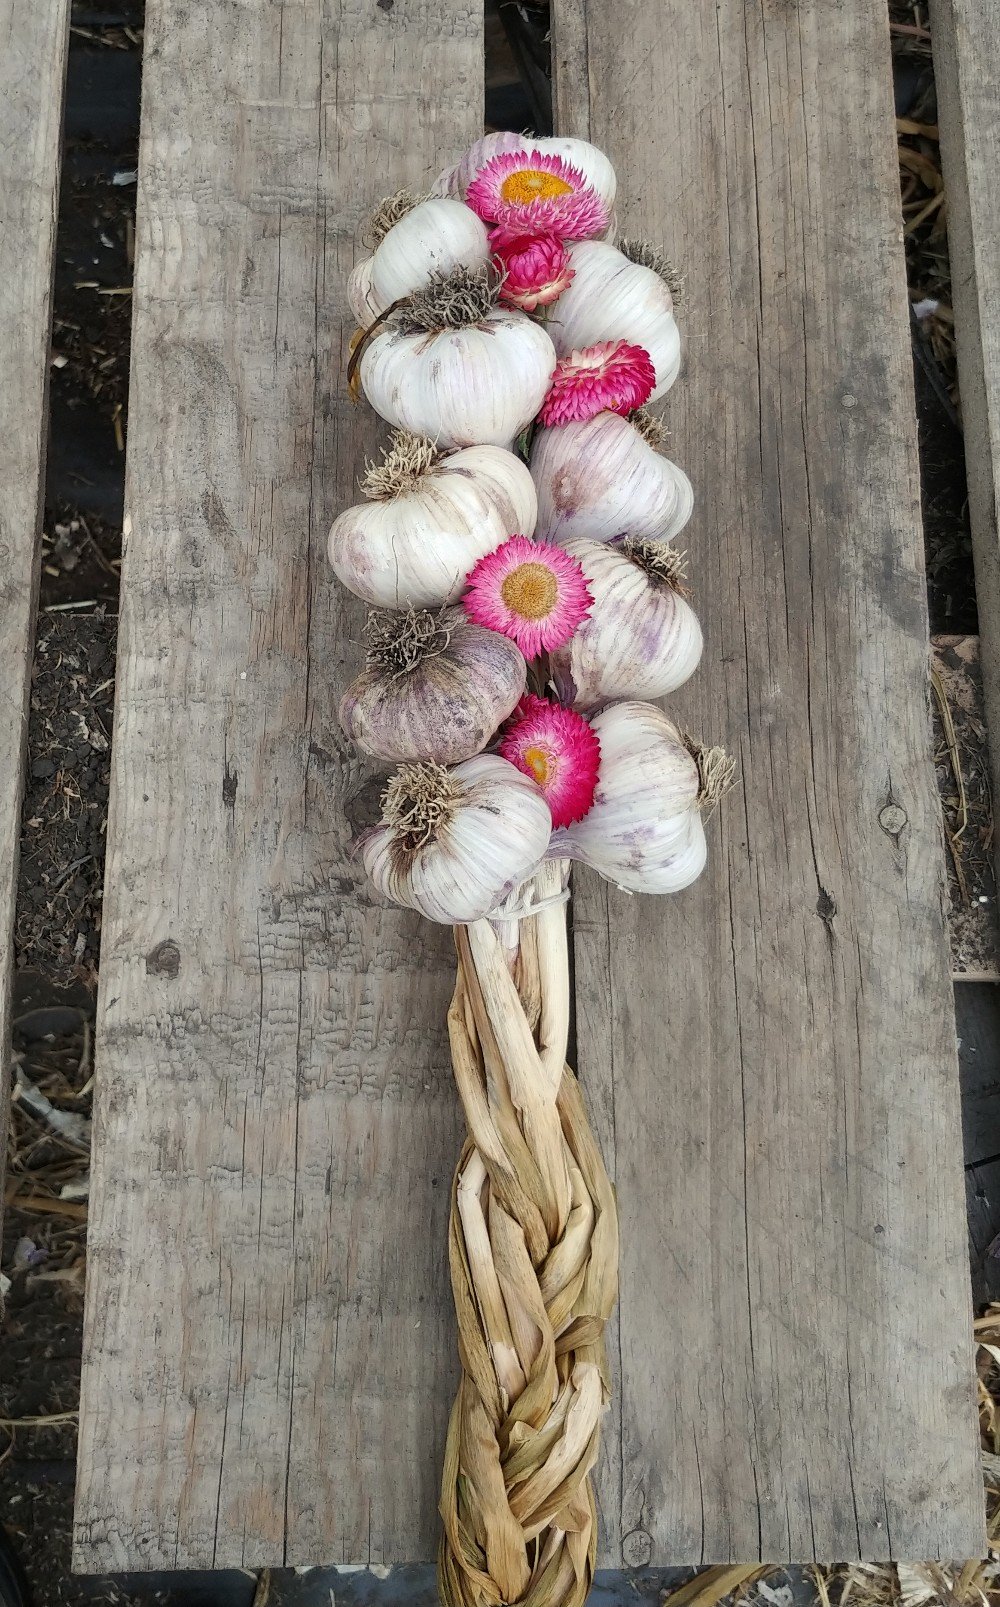 Farm Happenings October 8 - Winter program, garlic and extras